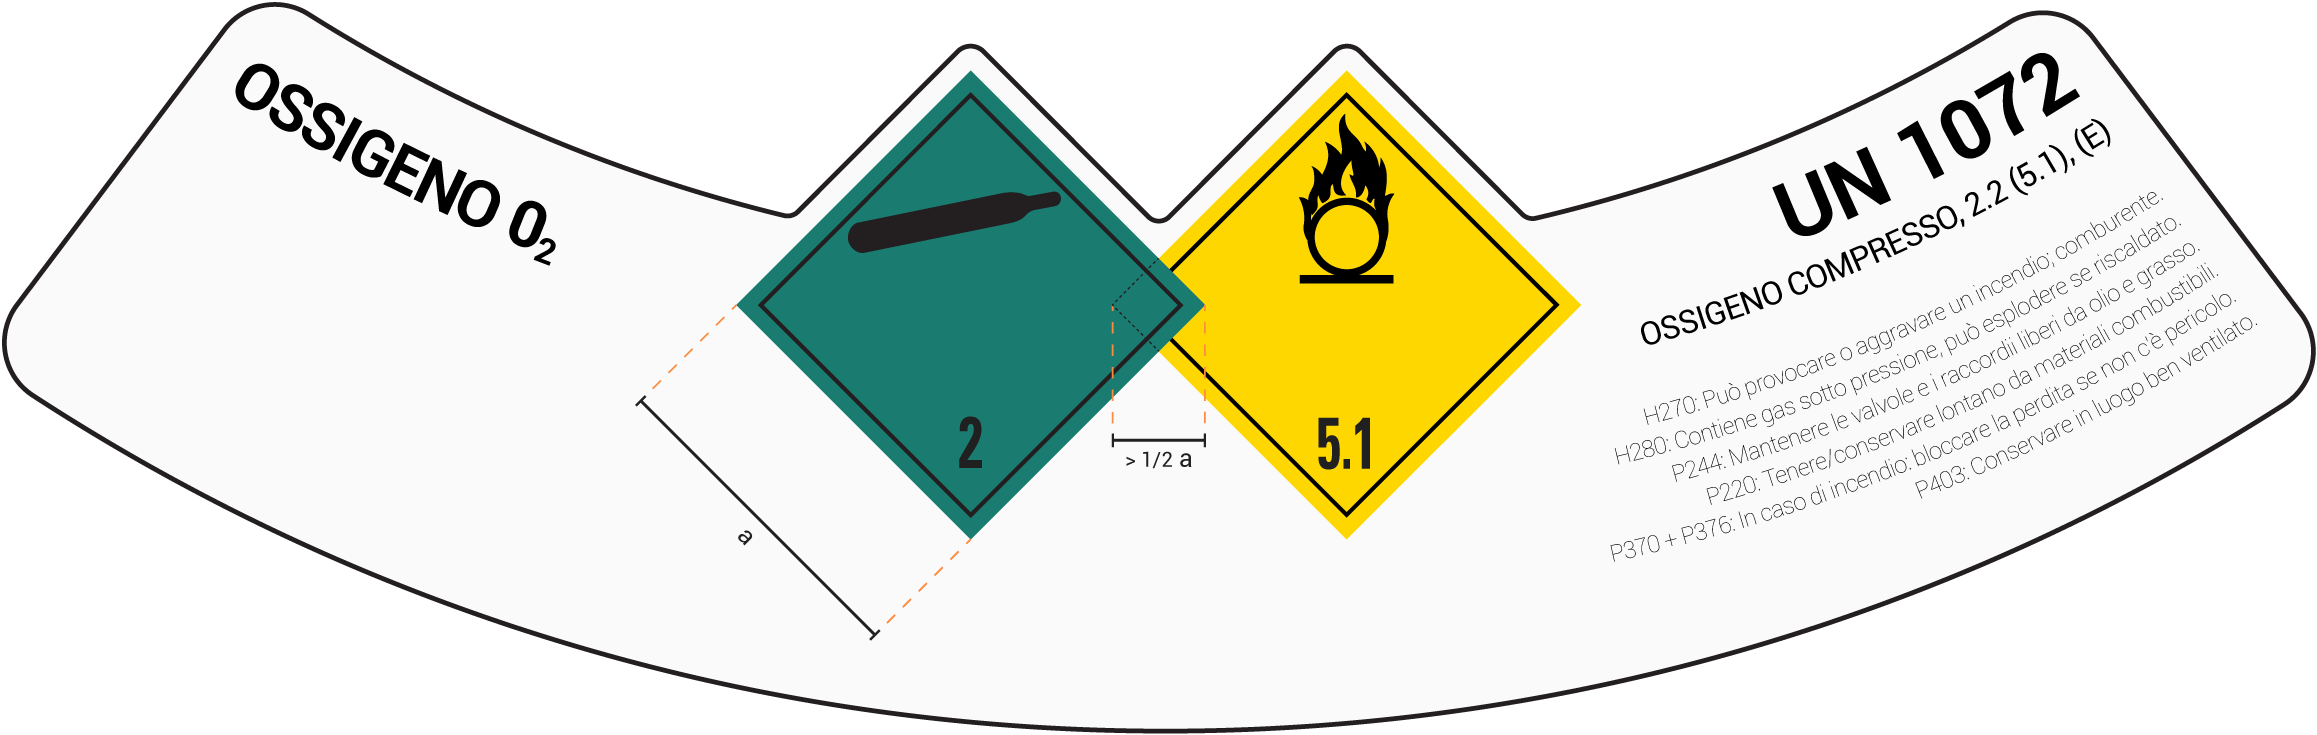 Esempio di etichetta ADR per bombole di gas cl. 2